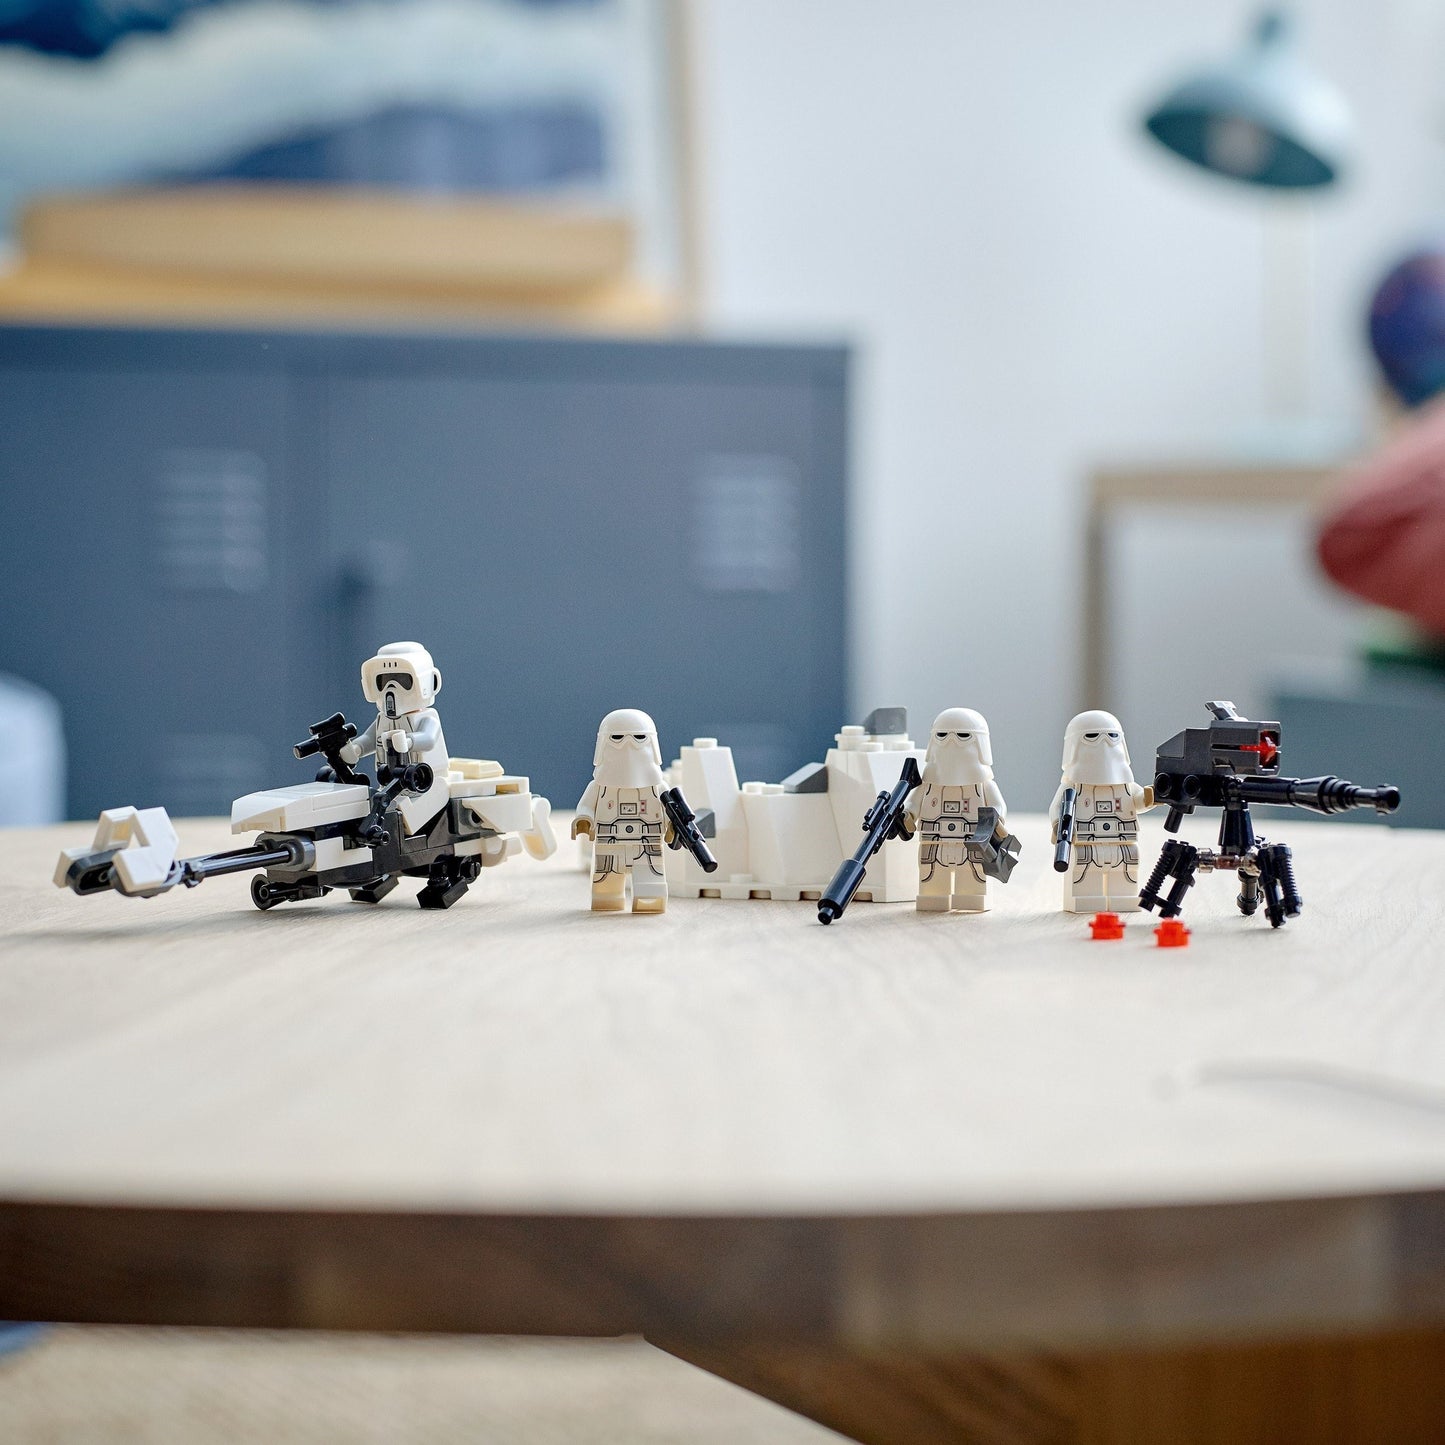 LEGO® Star Wars - Pachet de lupta Snowtrooper™ 75320, 105 piese